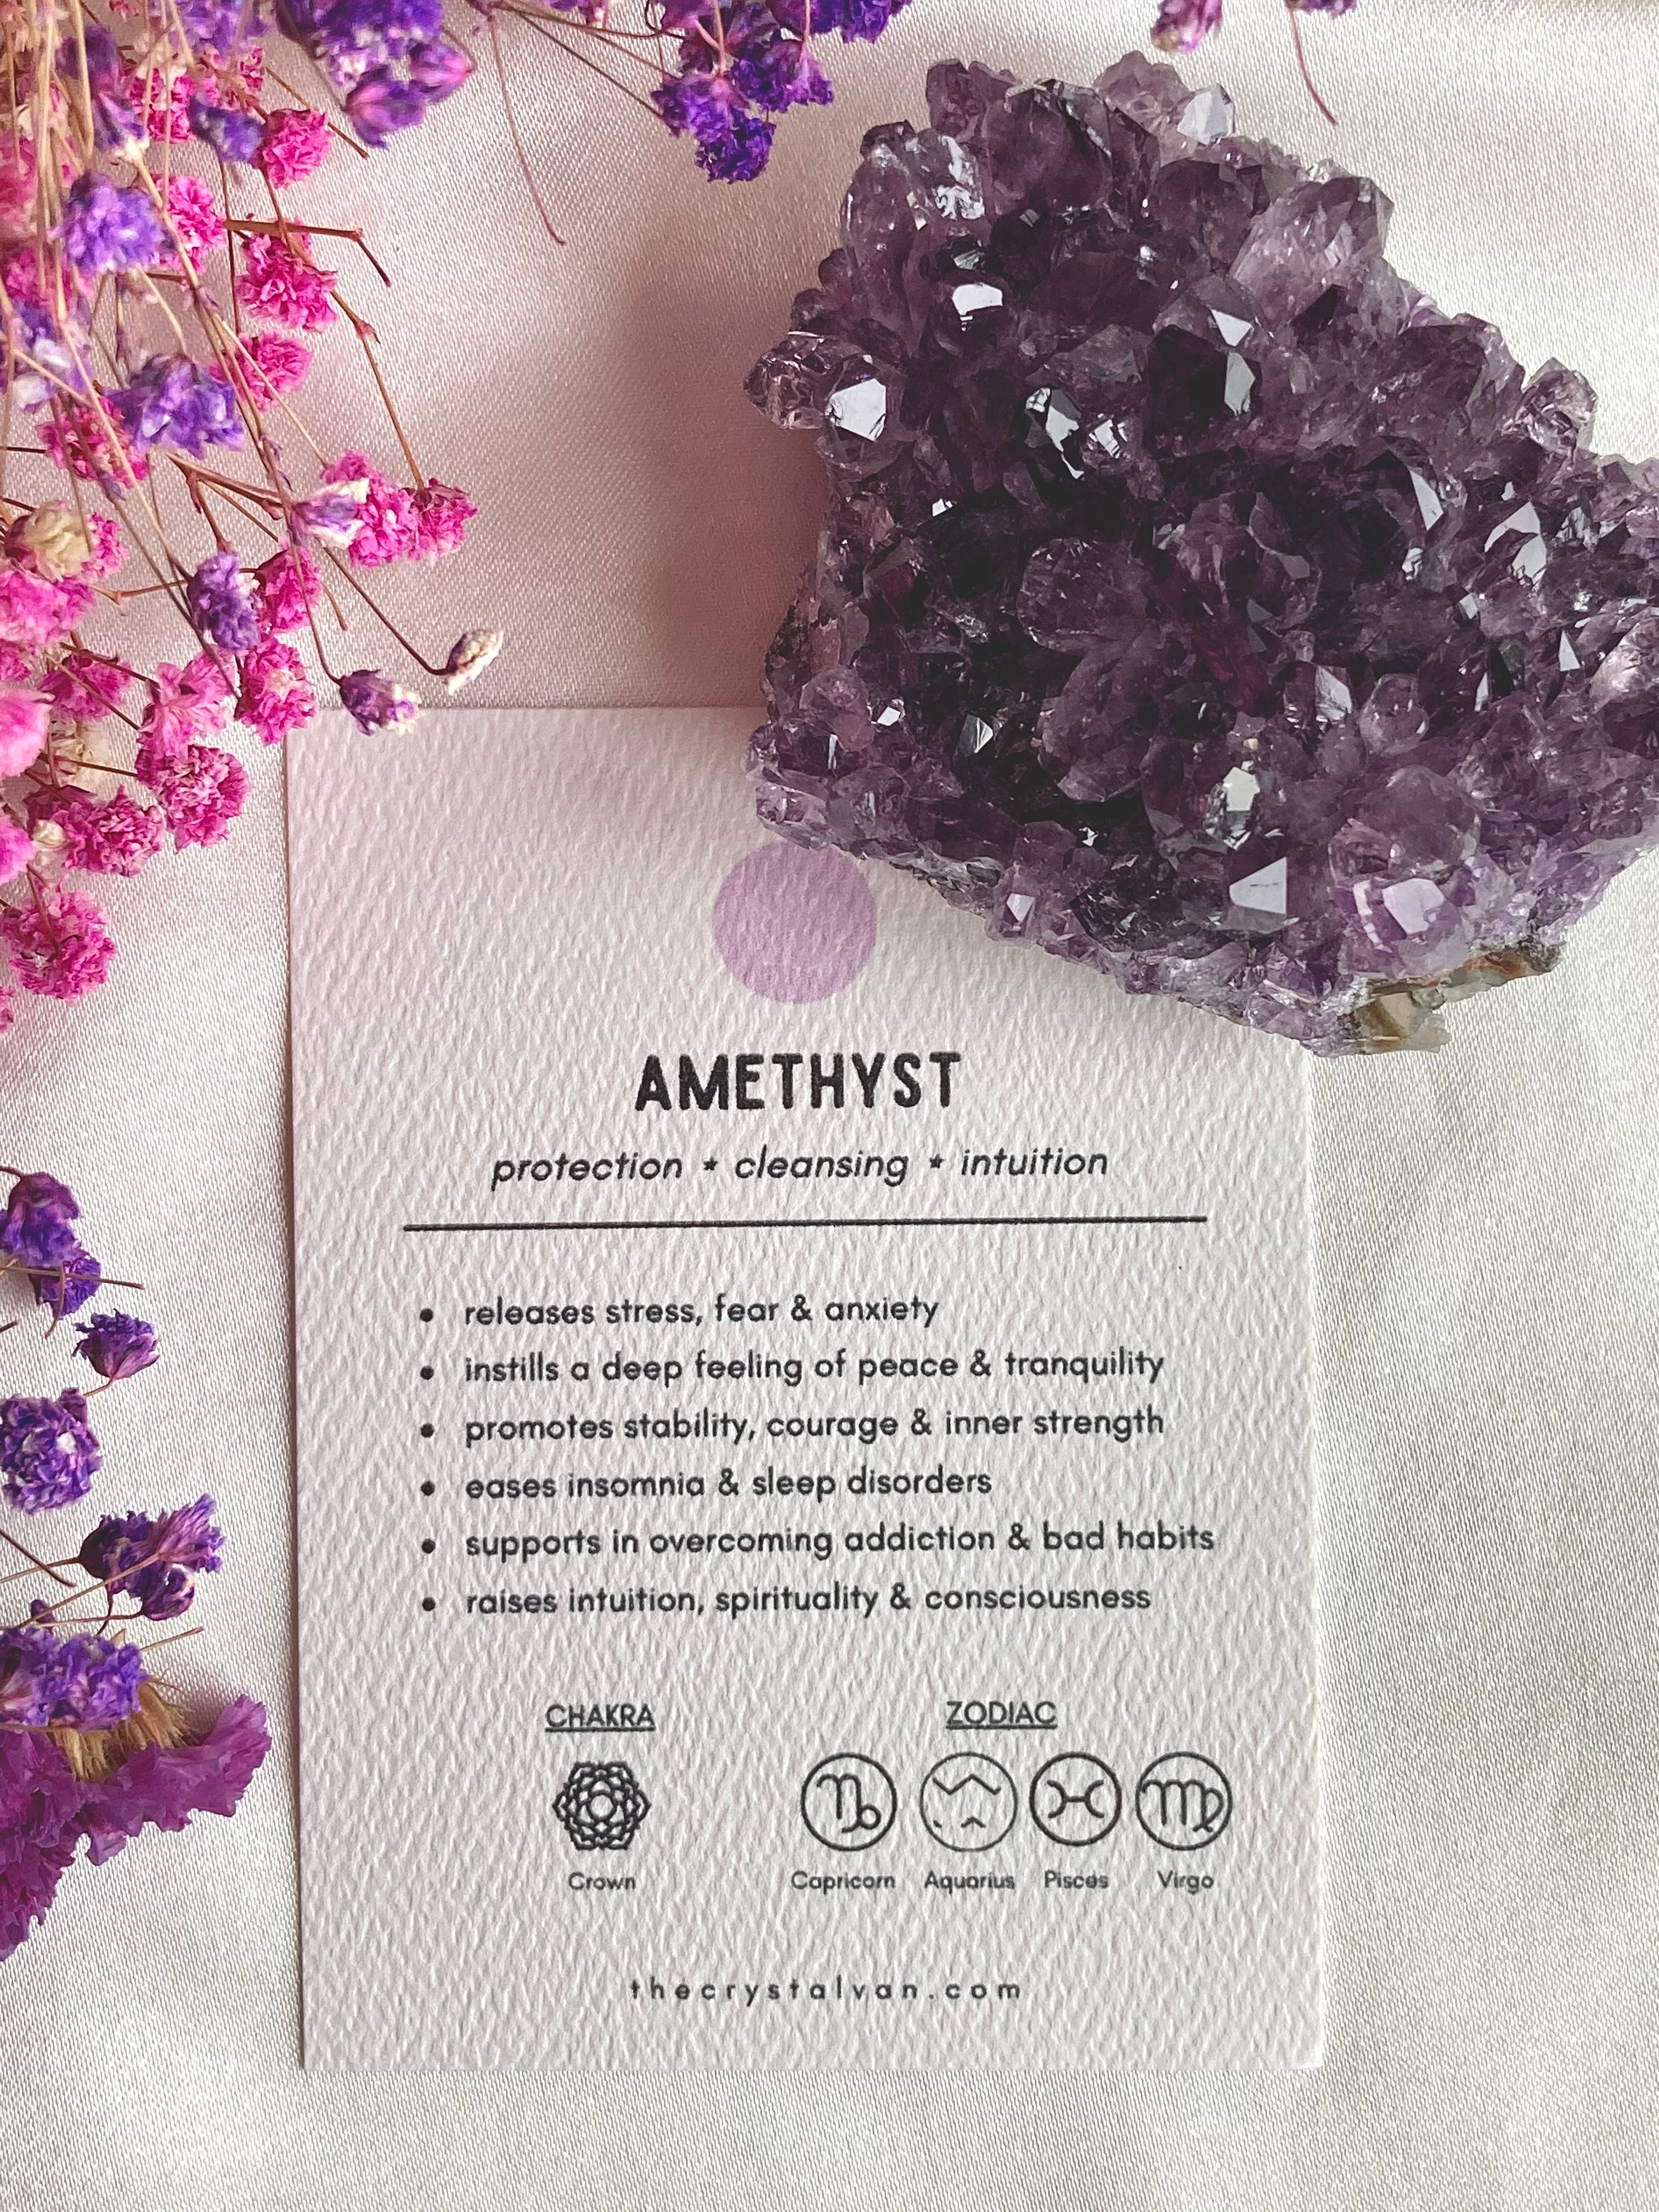 amethyst gemstone meaning